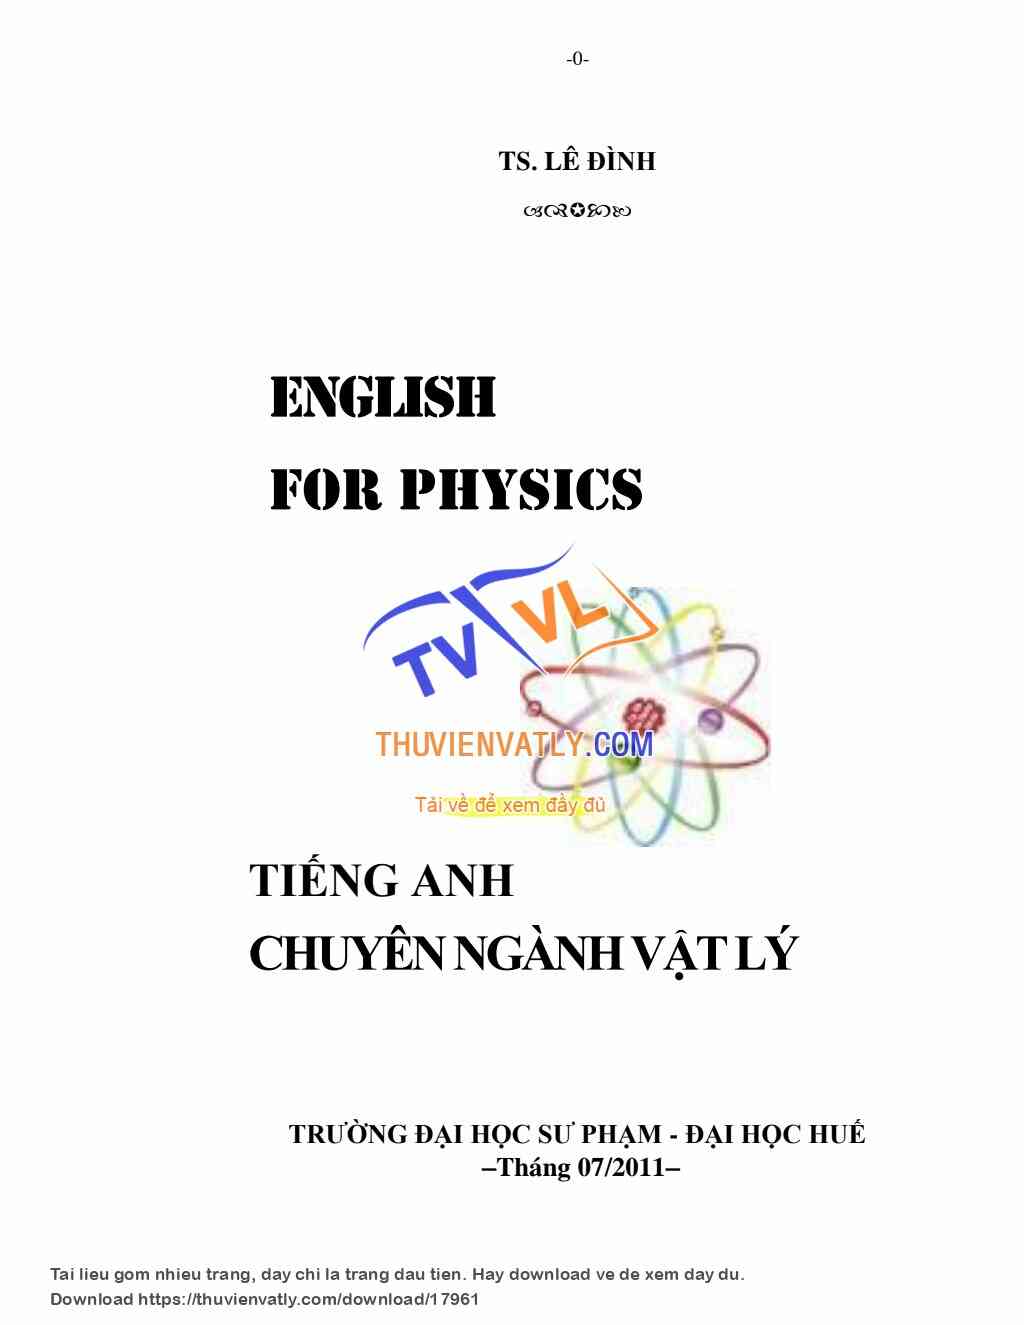 English for Physics - Lê Đình - ĐHSP Huế